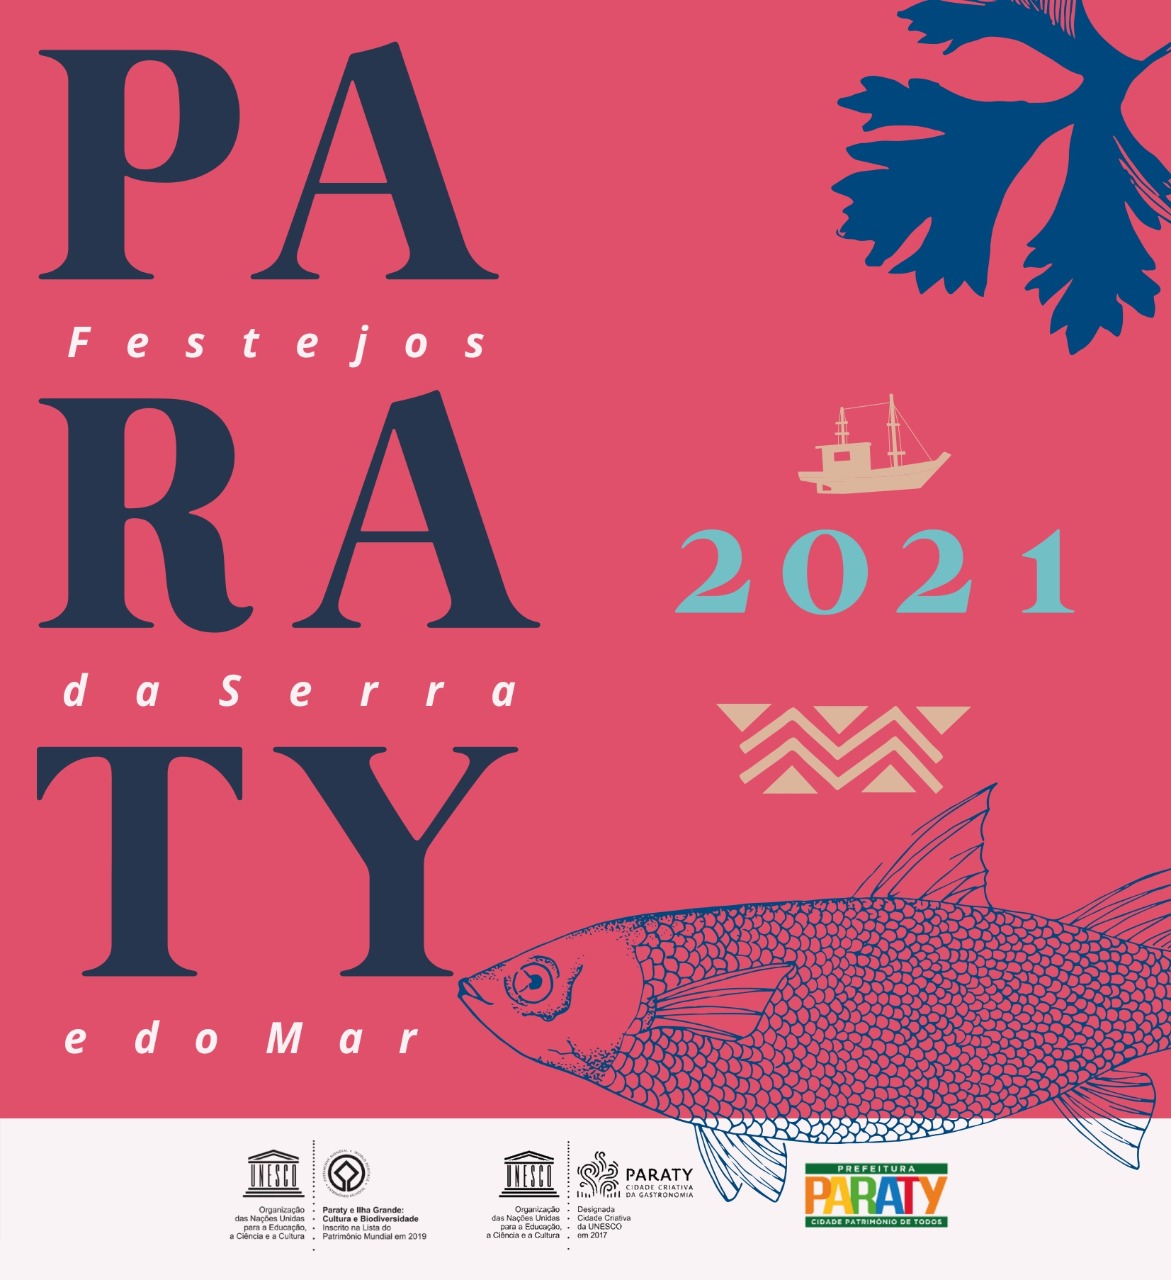 Calendário 2021 “Festejos da Serra e do Mar”